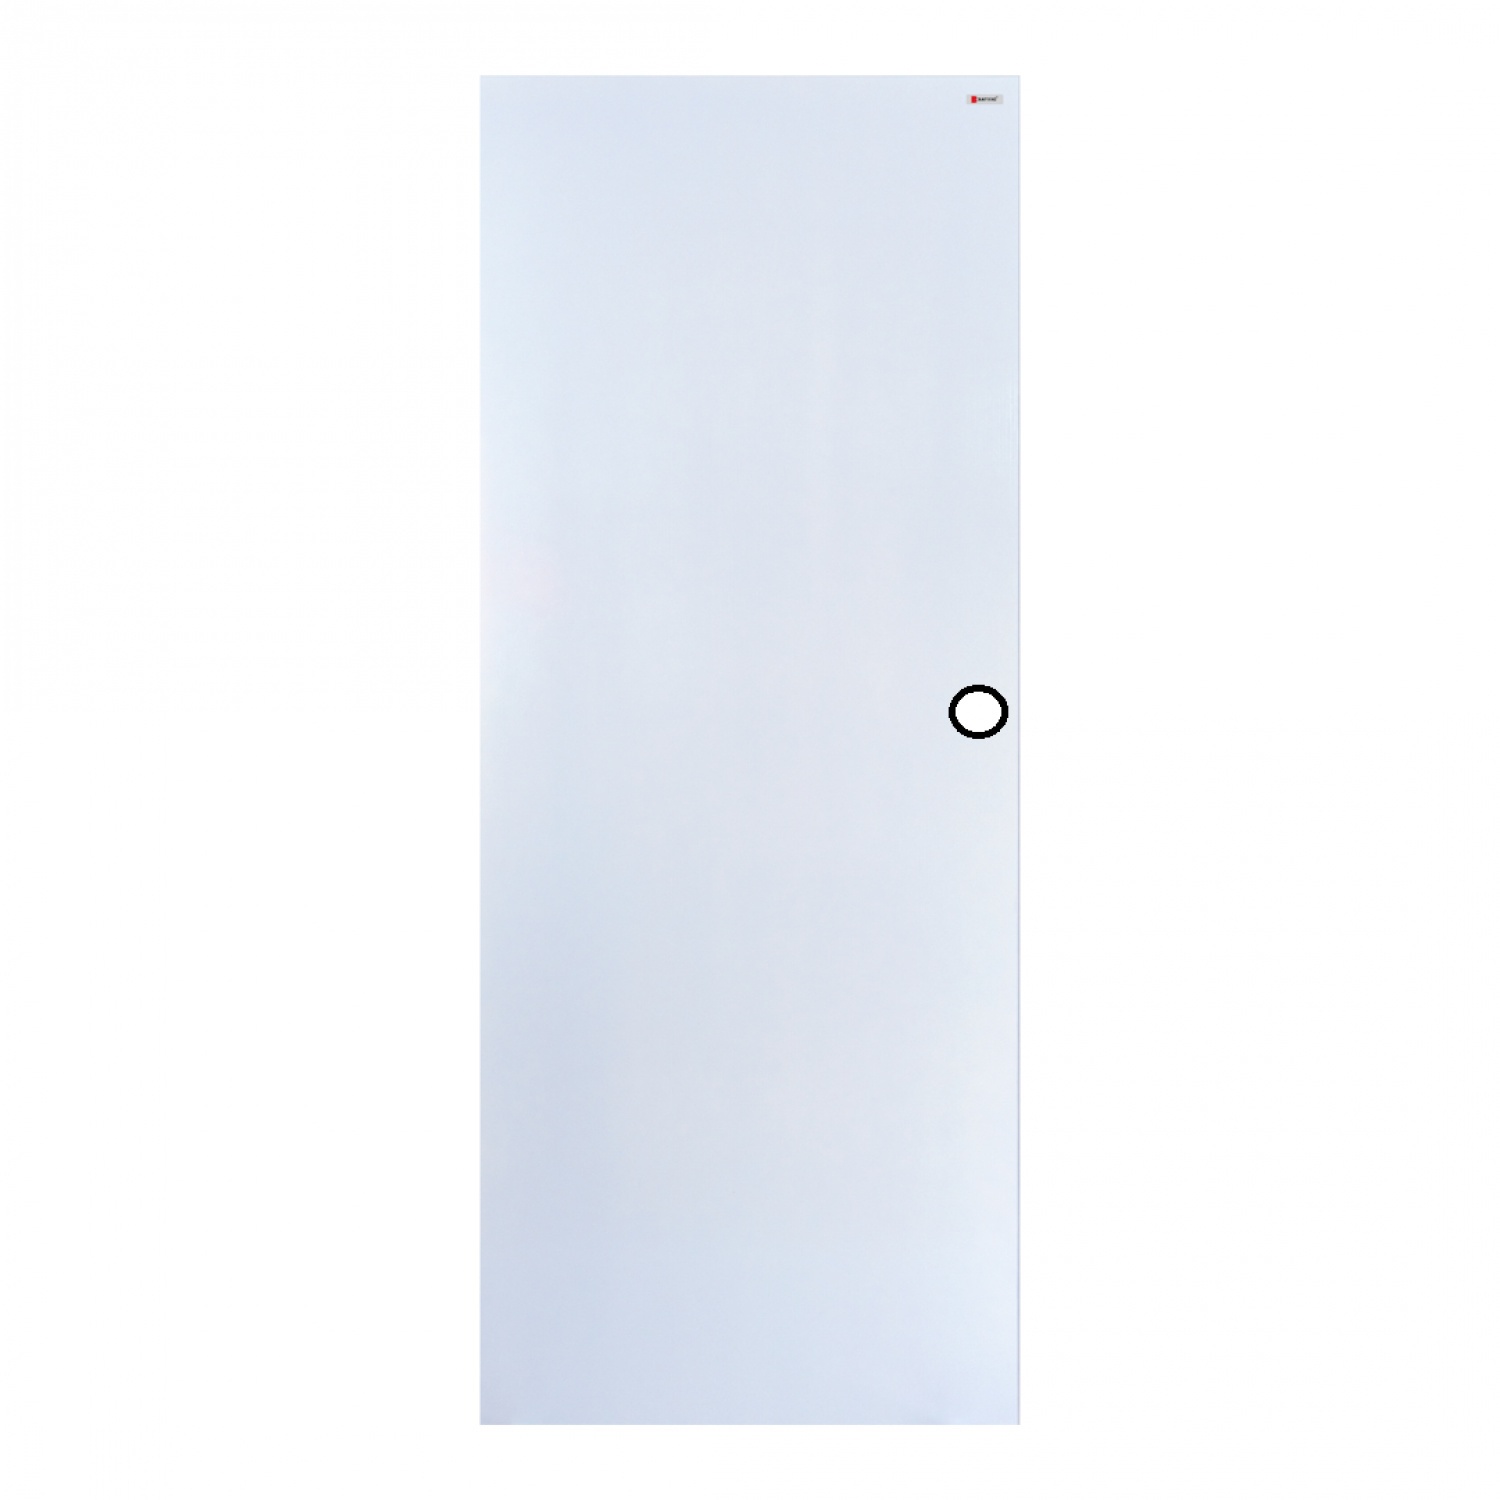 BATHIC ประตูยูพีวีซี BUP01 70x180ซม. สีขาวผิวลายเสี้ยนไม้ (เจาะรูลูกบิด)